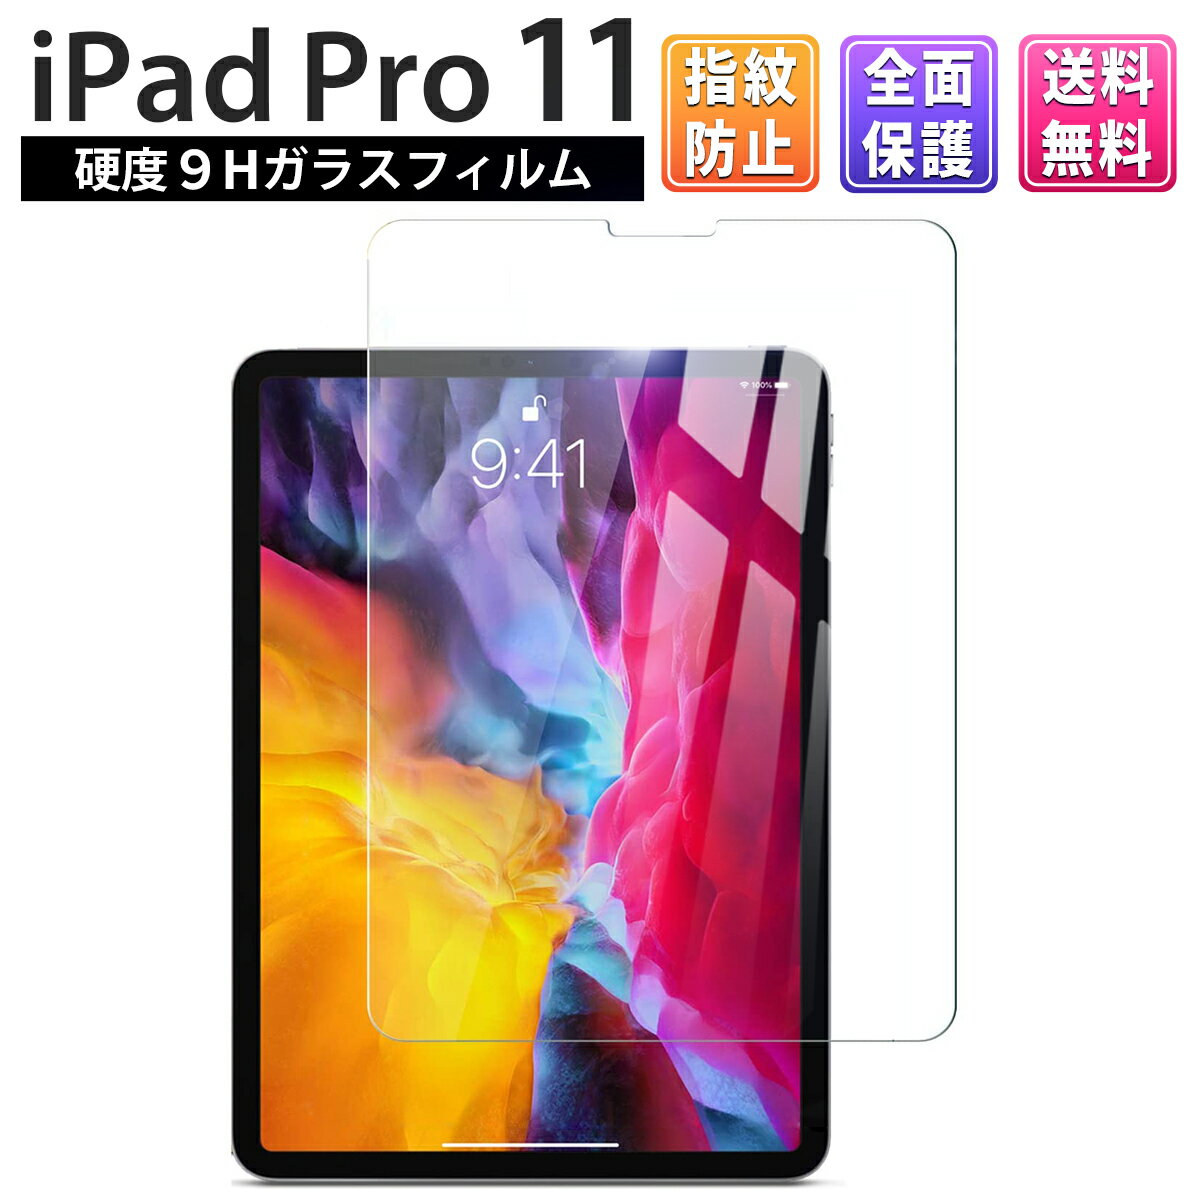 iPad Pro 11 ( 2020年モデル 2018年モデル ) ガラスフィルム 保護フィルム ガラス 保護 フィルム 画面保護 飛散防止 自己吸着 クリア